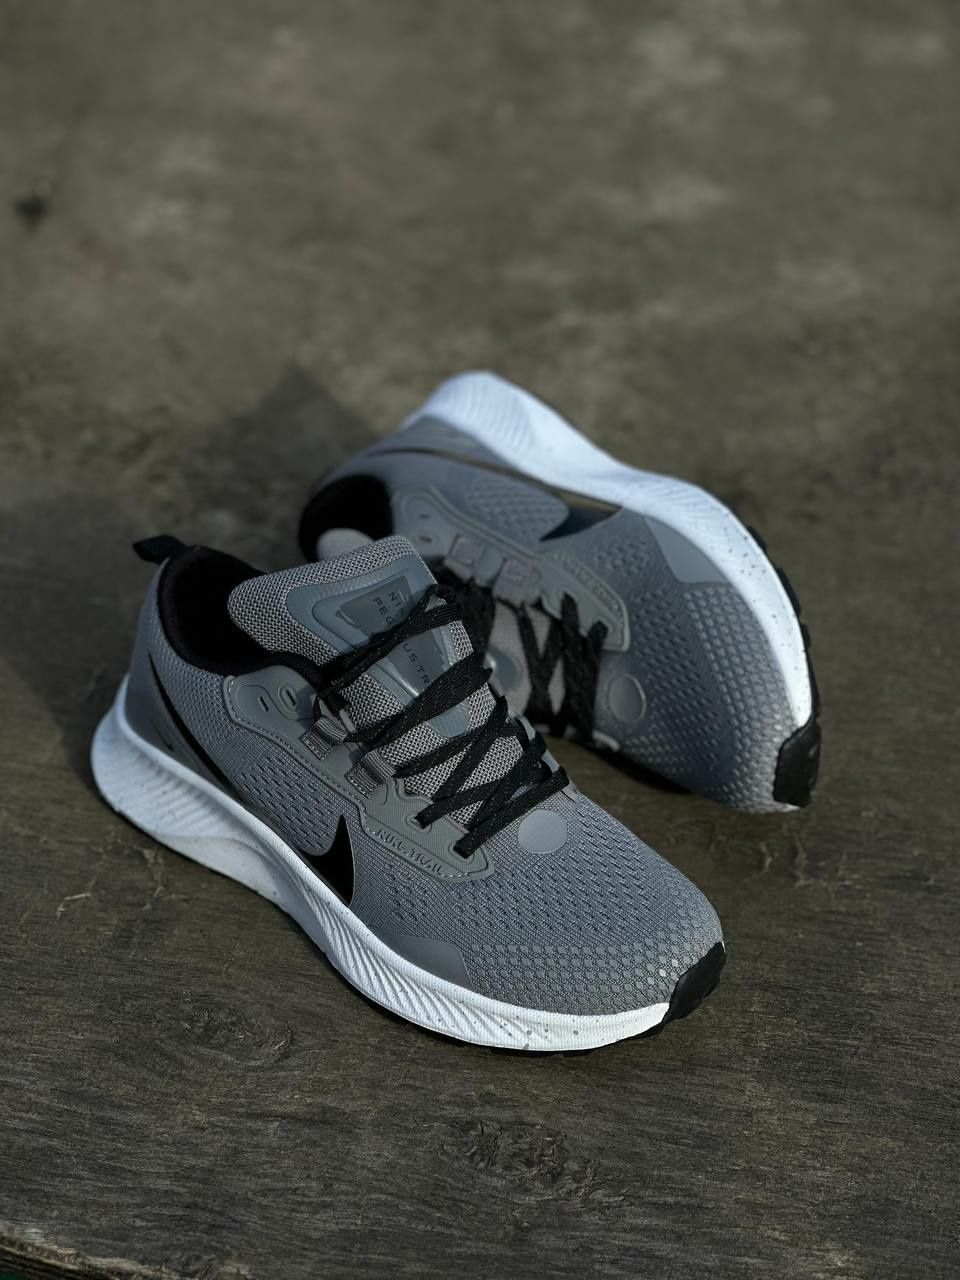 Nike pegasus trail gray/мужские кросовки/чоловічі кросівки/nike/Найк